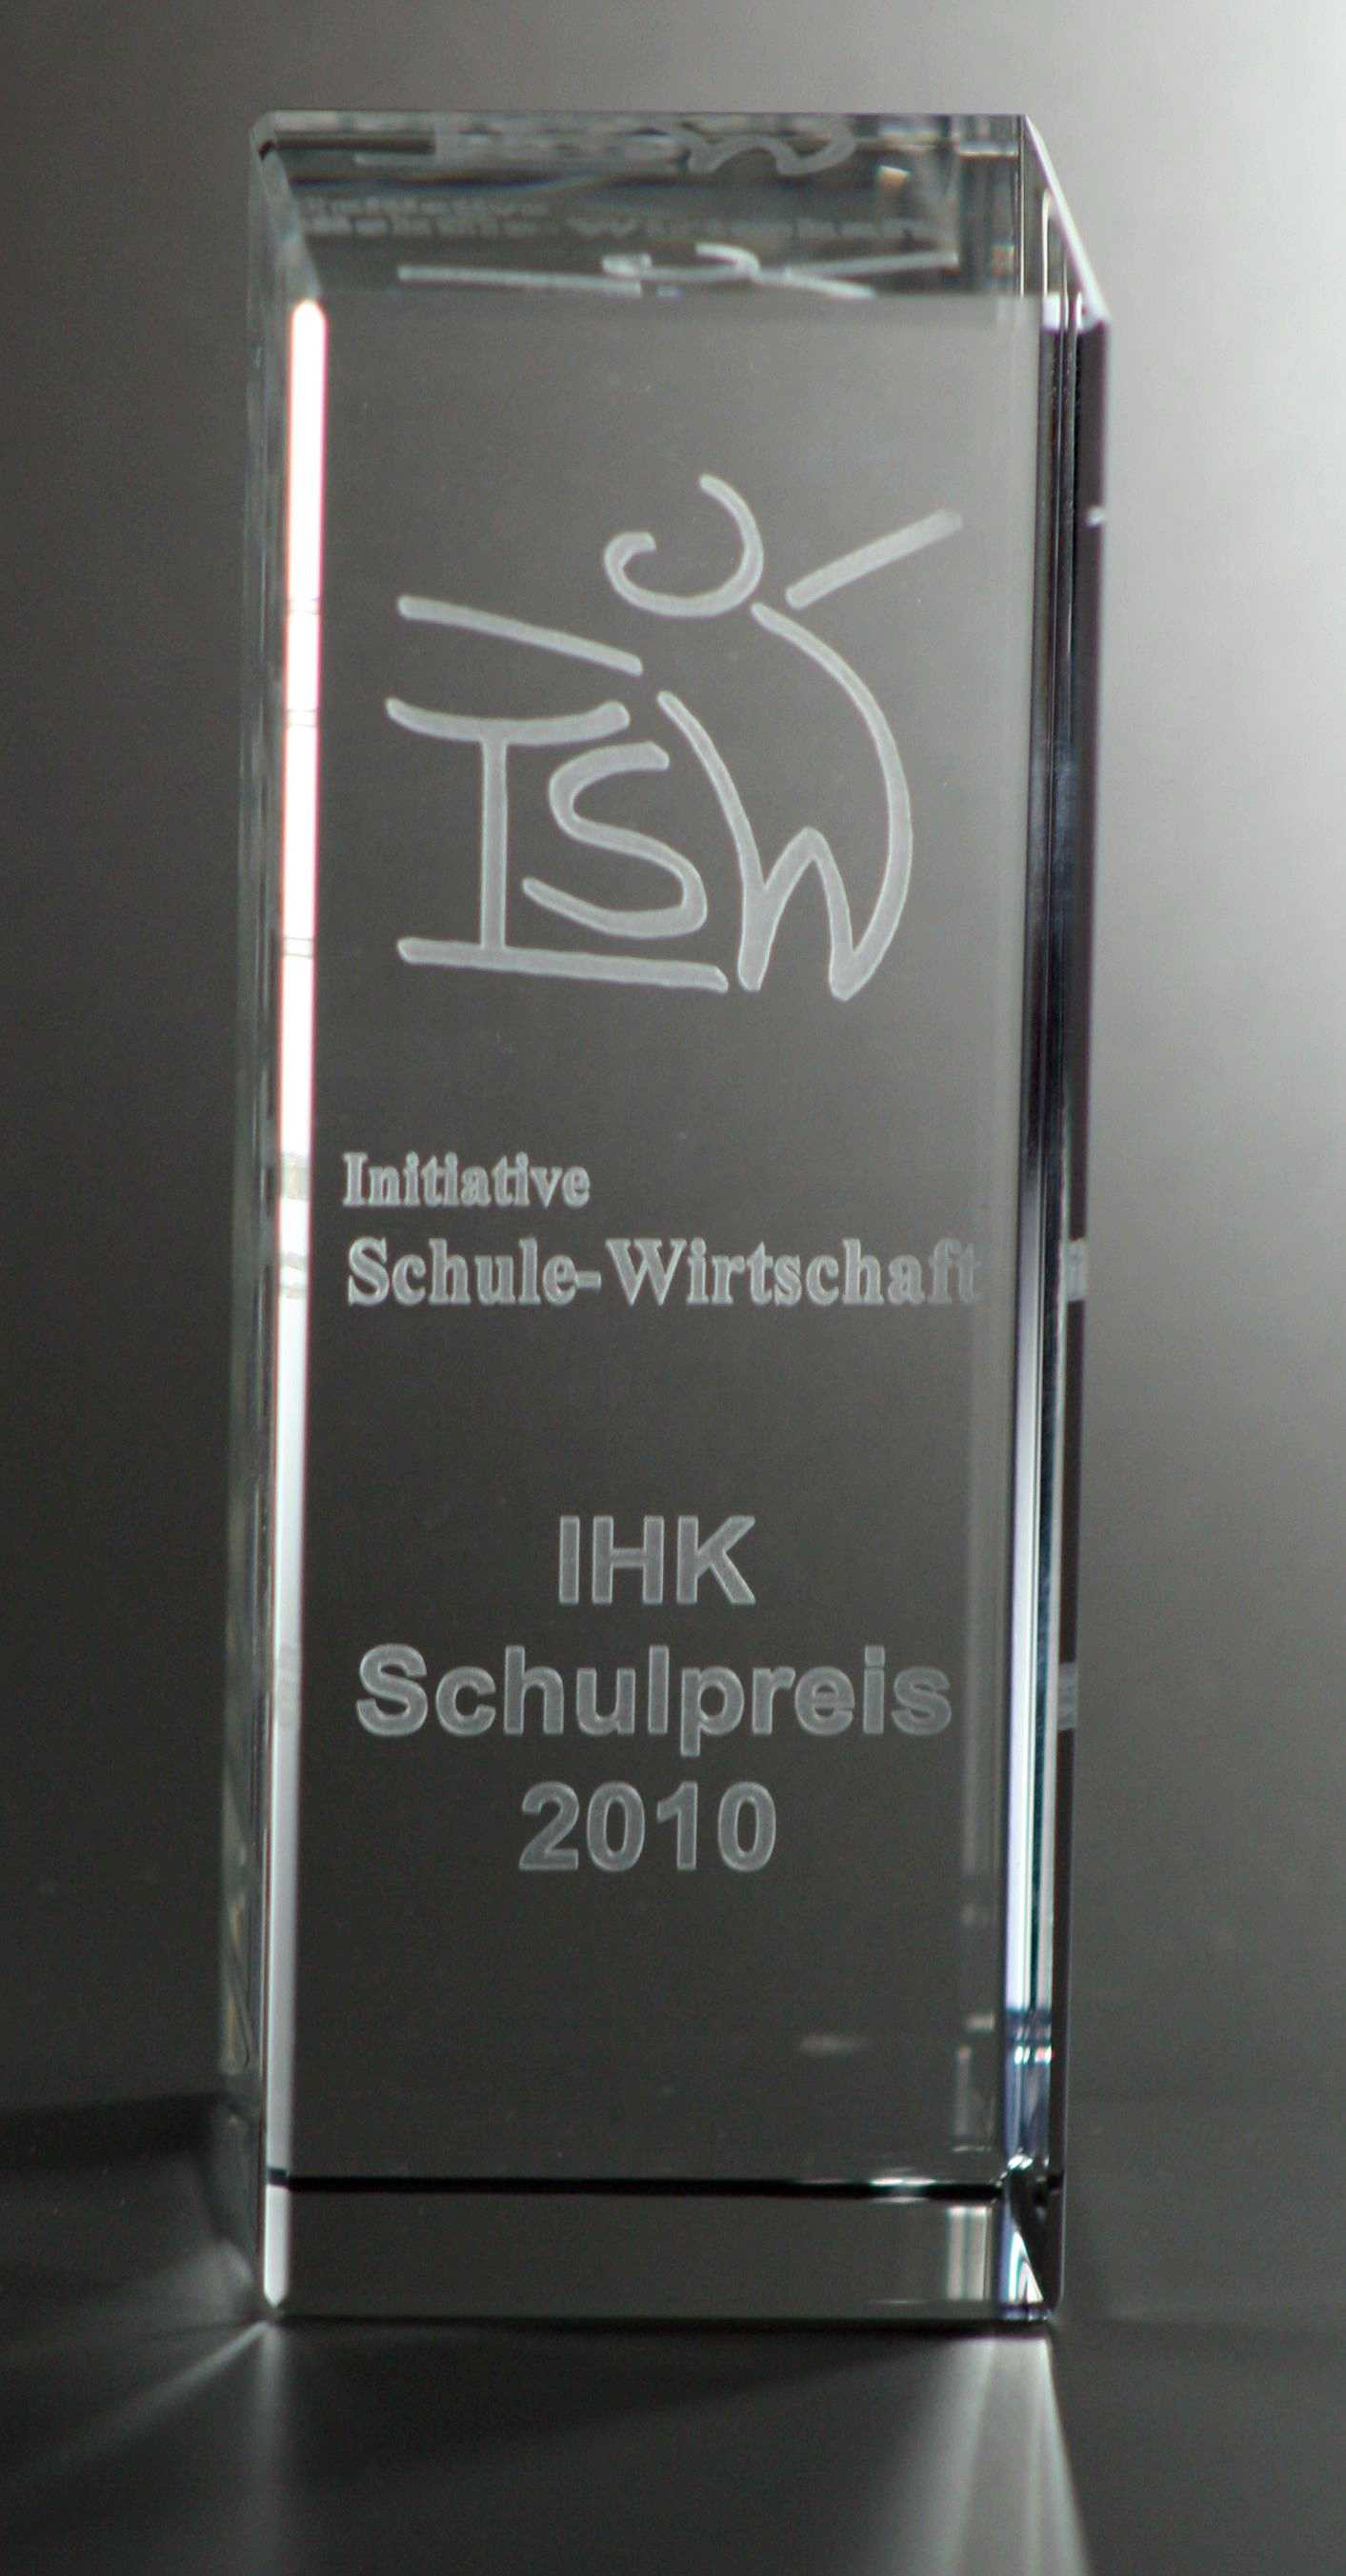 IHK Schulpreis 2010 a.jpg (g)